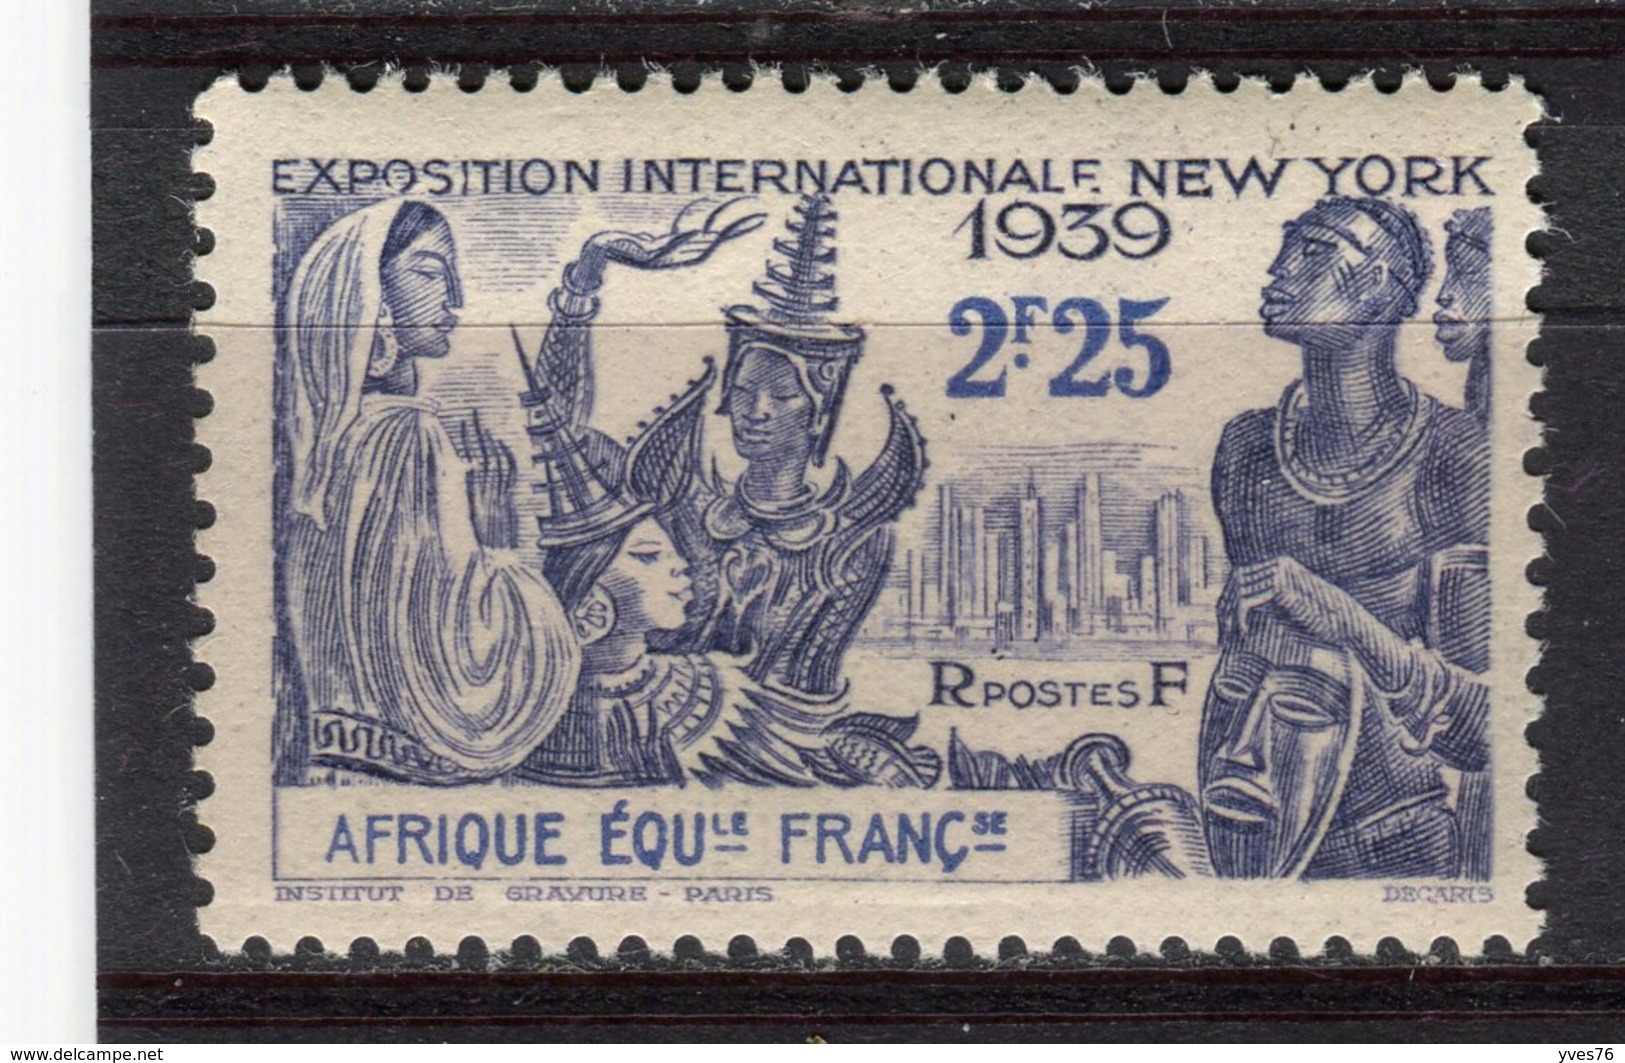 AFRIQUE EQUATORIALE FRANCAISE - Y&T N° 71* - Exposition Internationale De New York - Neufs